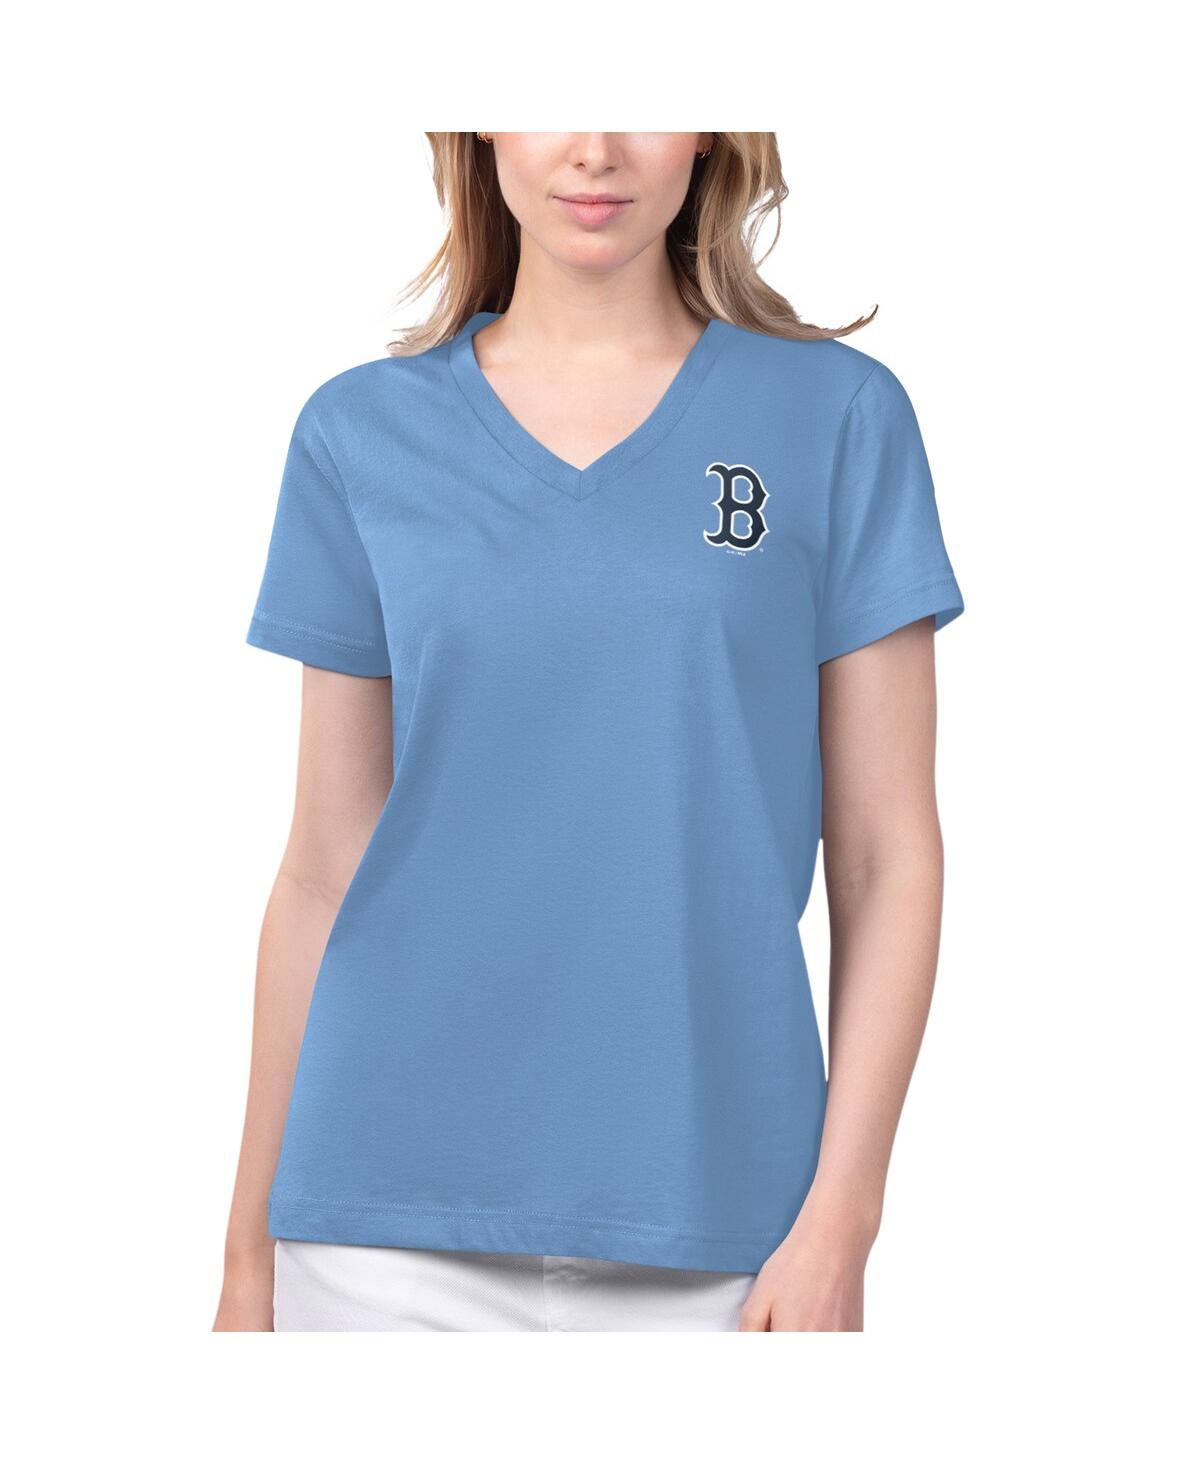 Women's Margaritaville Light Blue Boston Red Sox Game Time V-Neck T-shirt - Light Blue